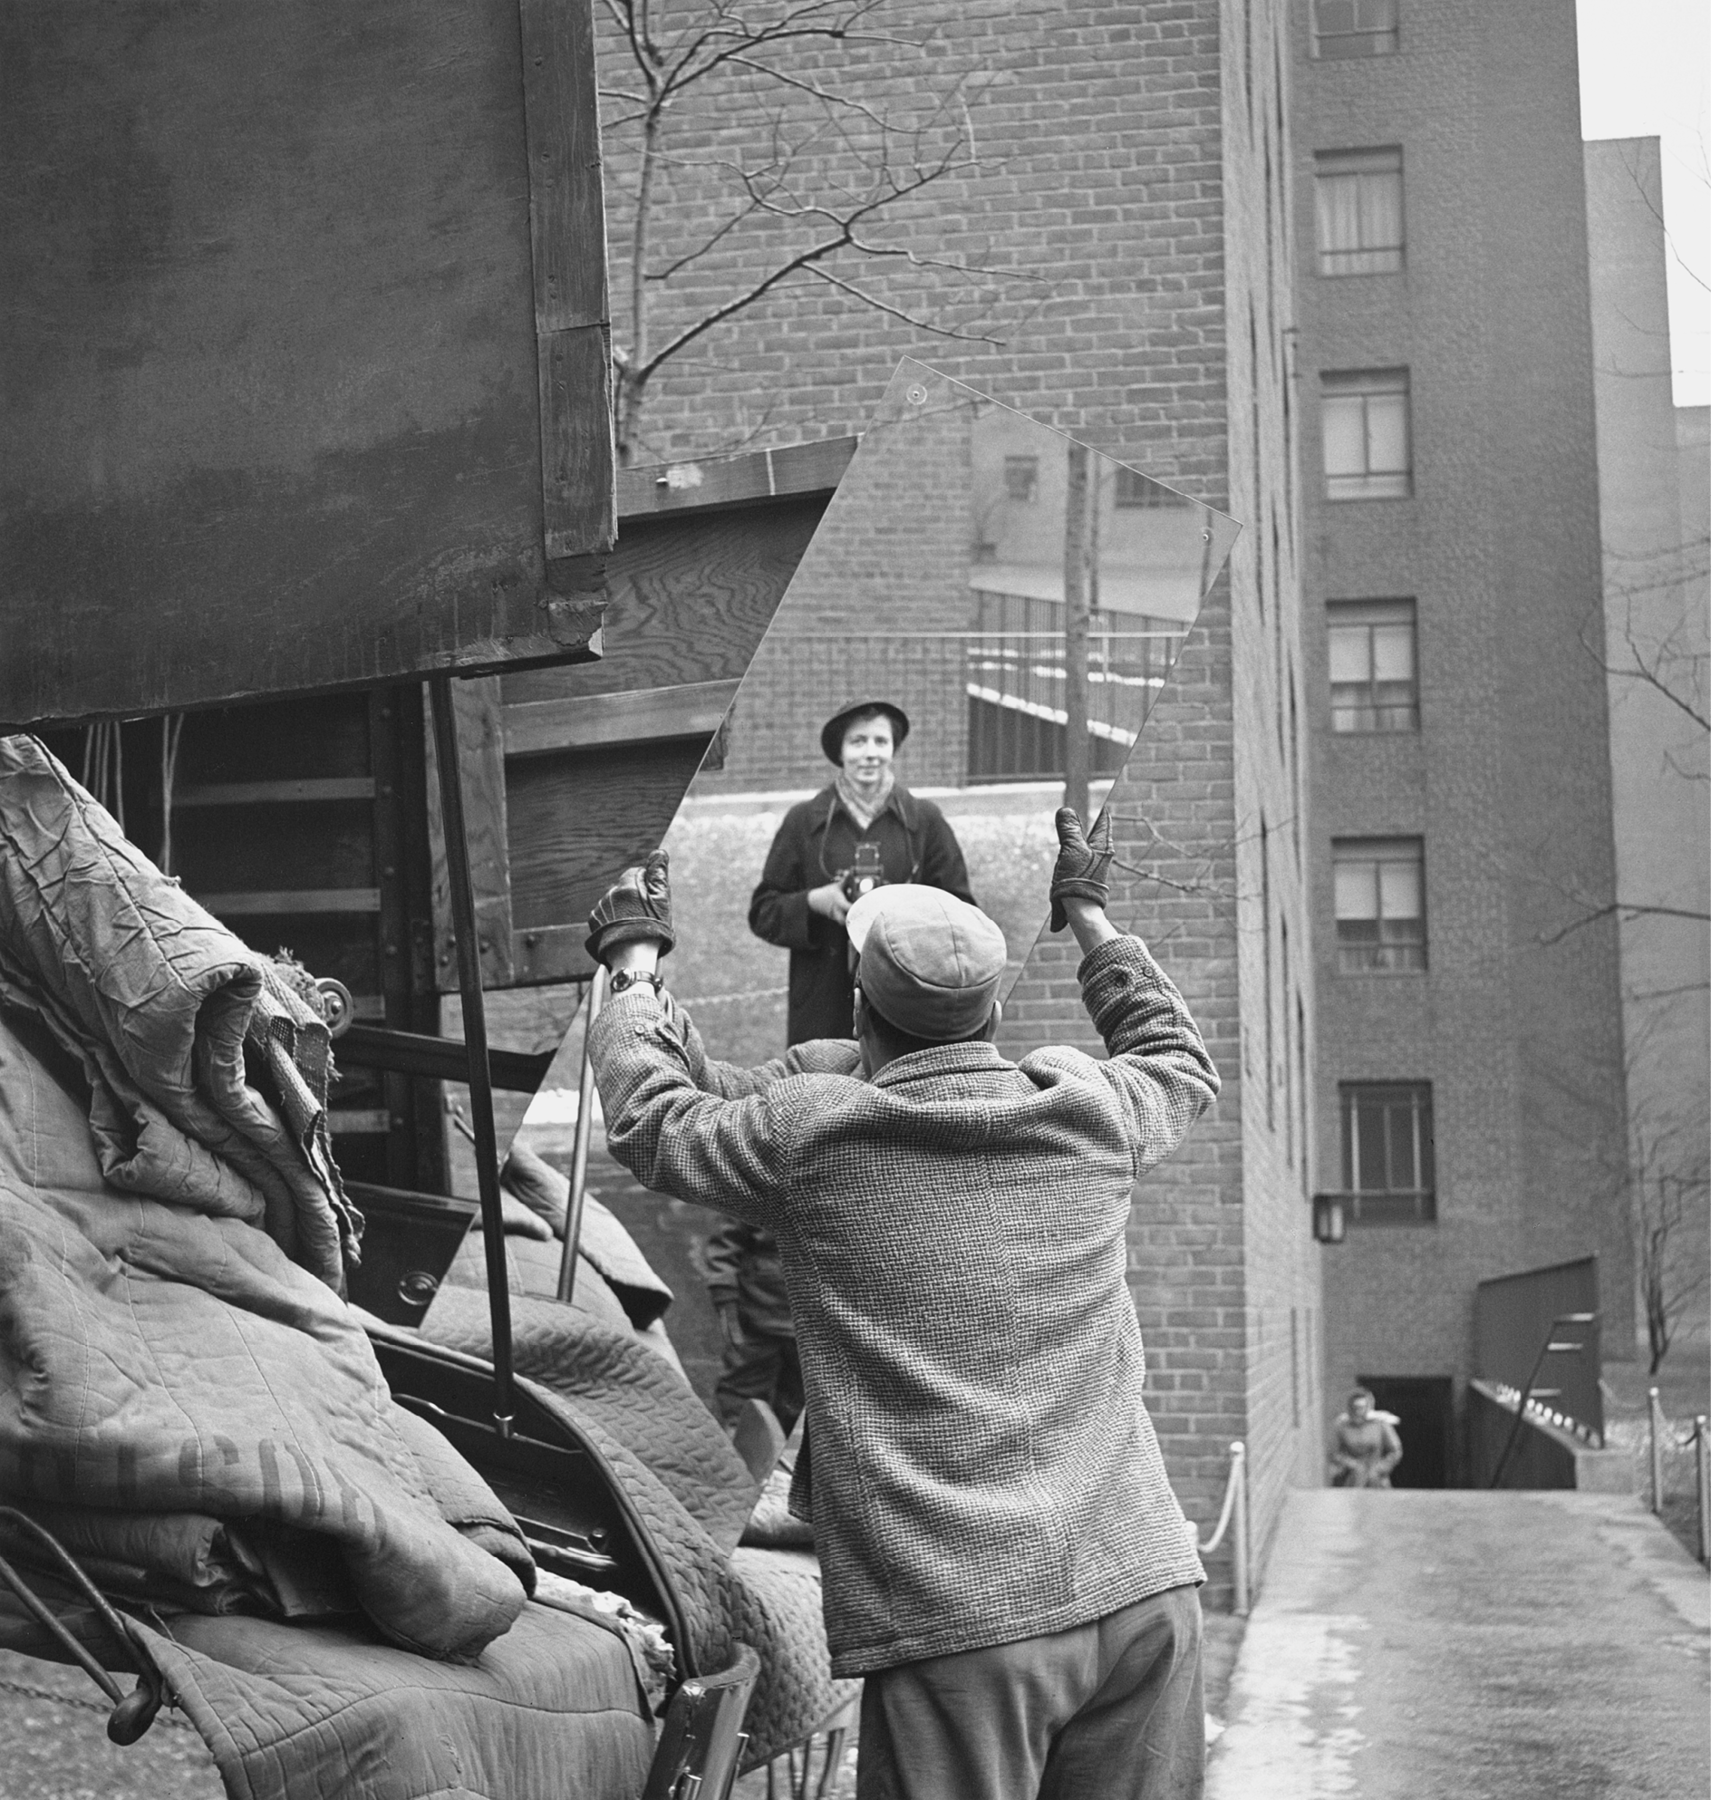 Fotografia em preto e branco. Um homem usando, casaco, boné e luvas. Ele está segurando um espelho com as mãos. Refletida no espelho, imagem de uma mulher usando chapéu e casaco, segurando com as mãos uma máquina fotográfica antiga.